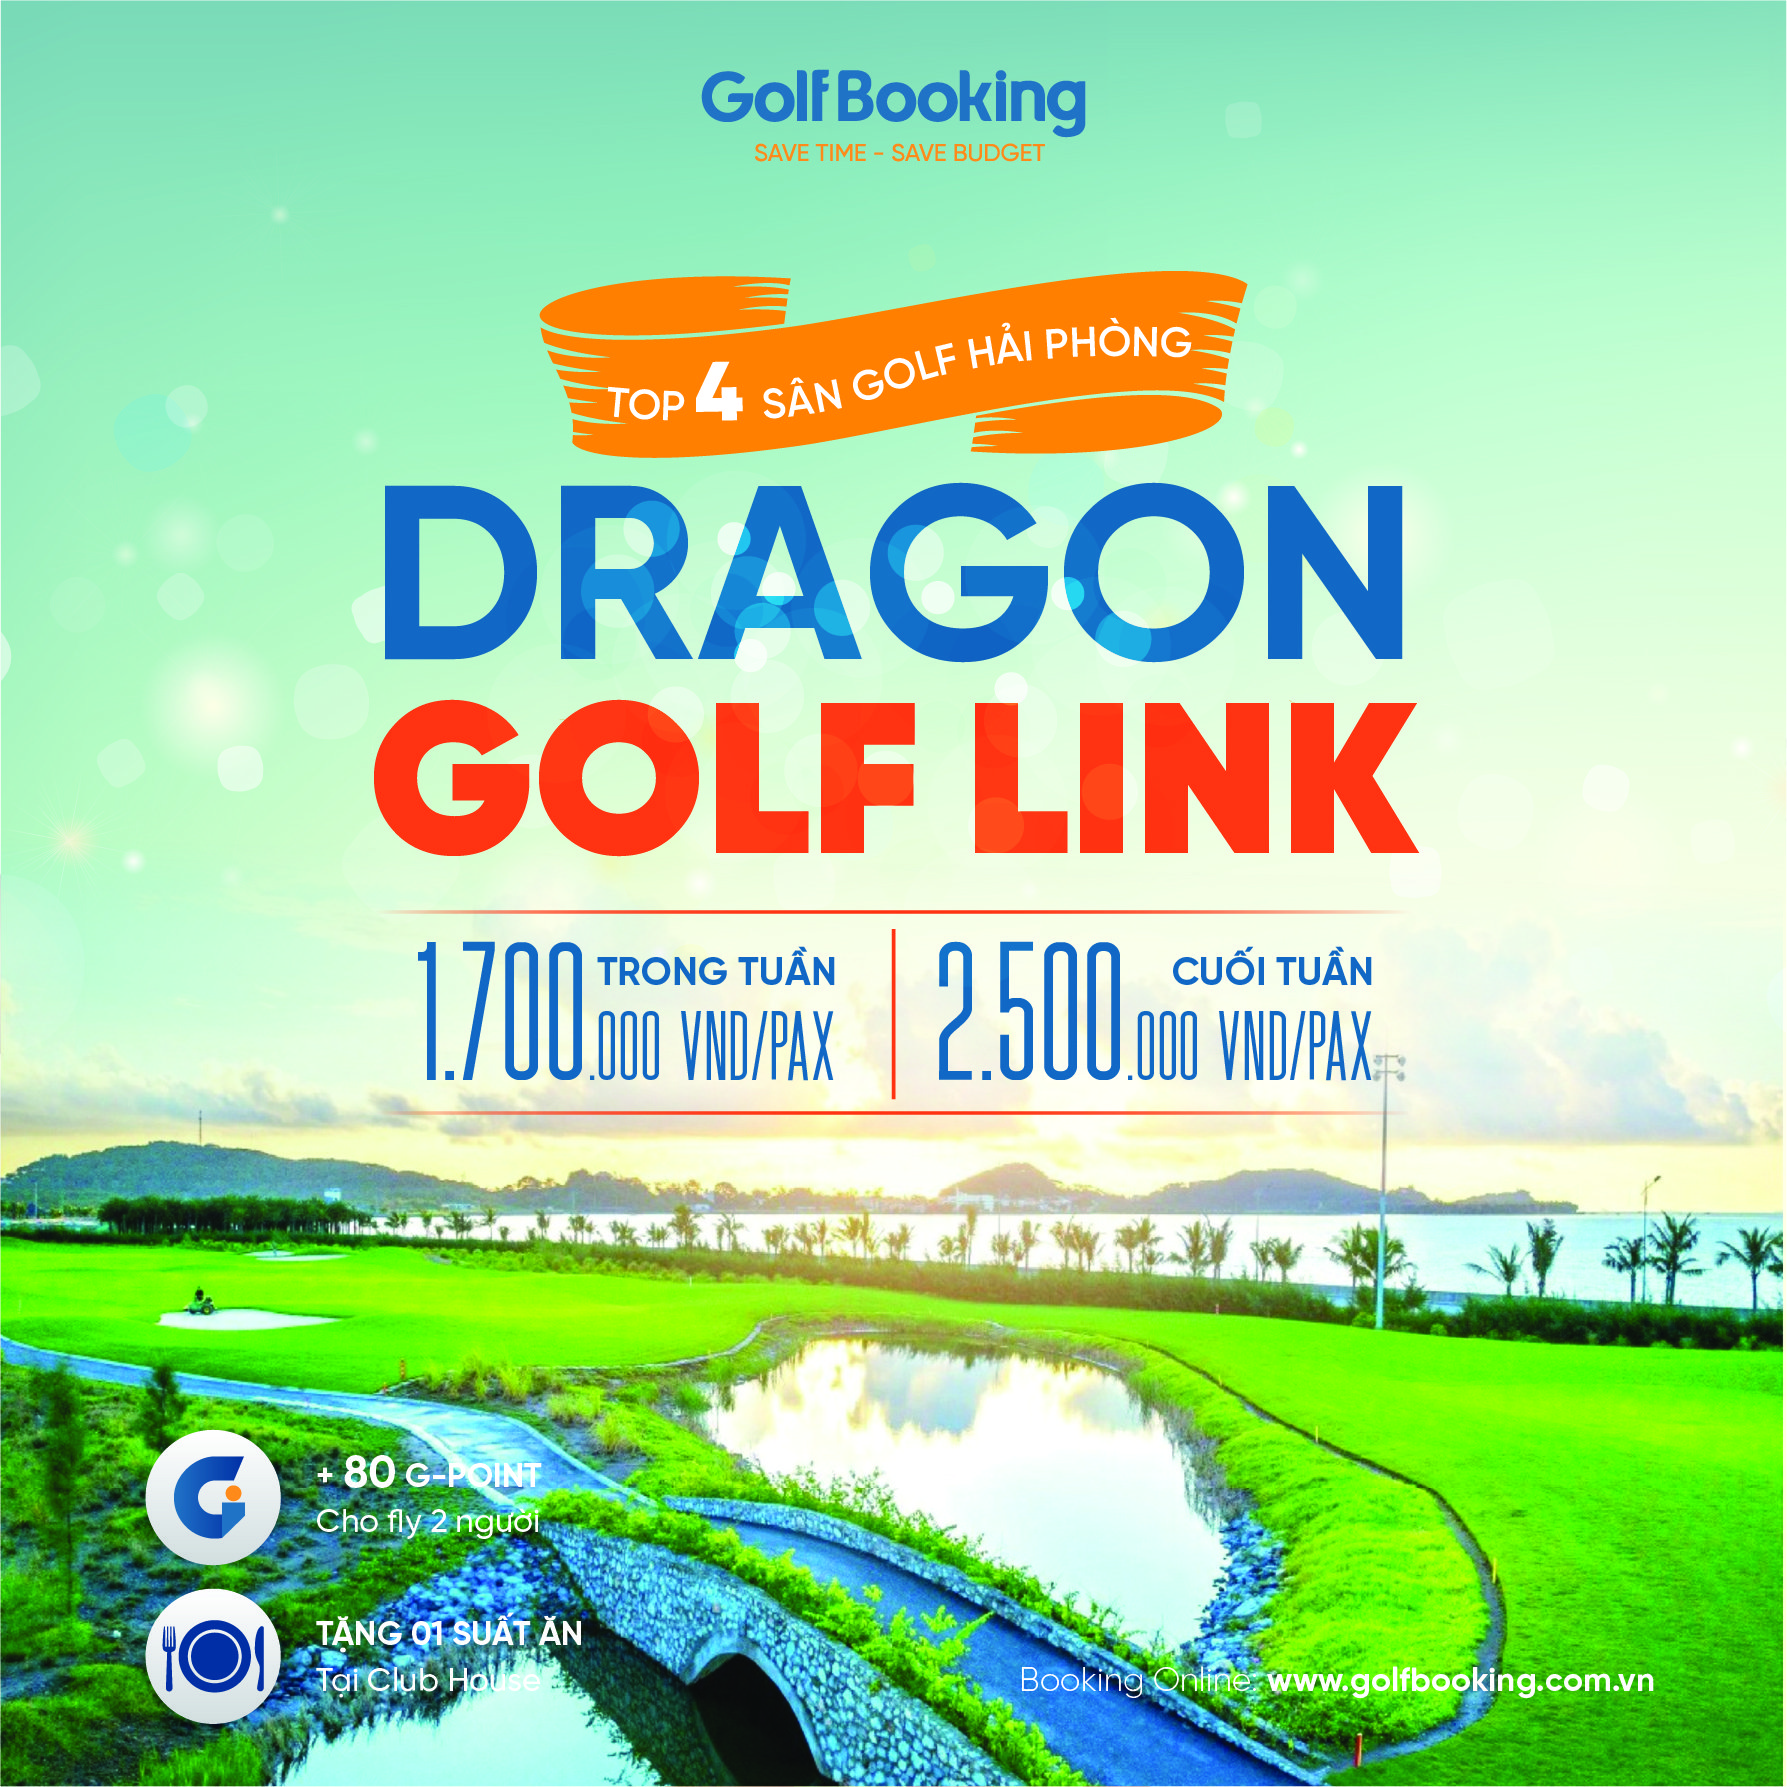 Dragon Golf Links Hai Phong